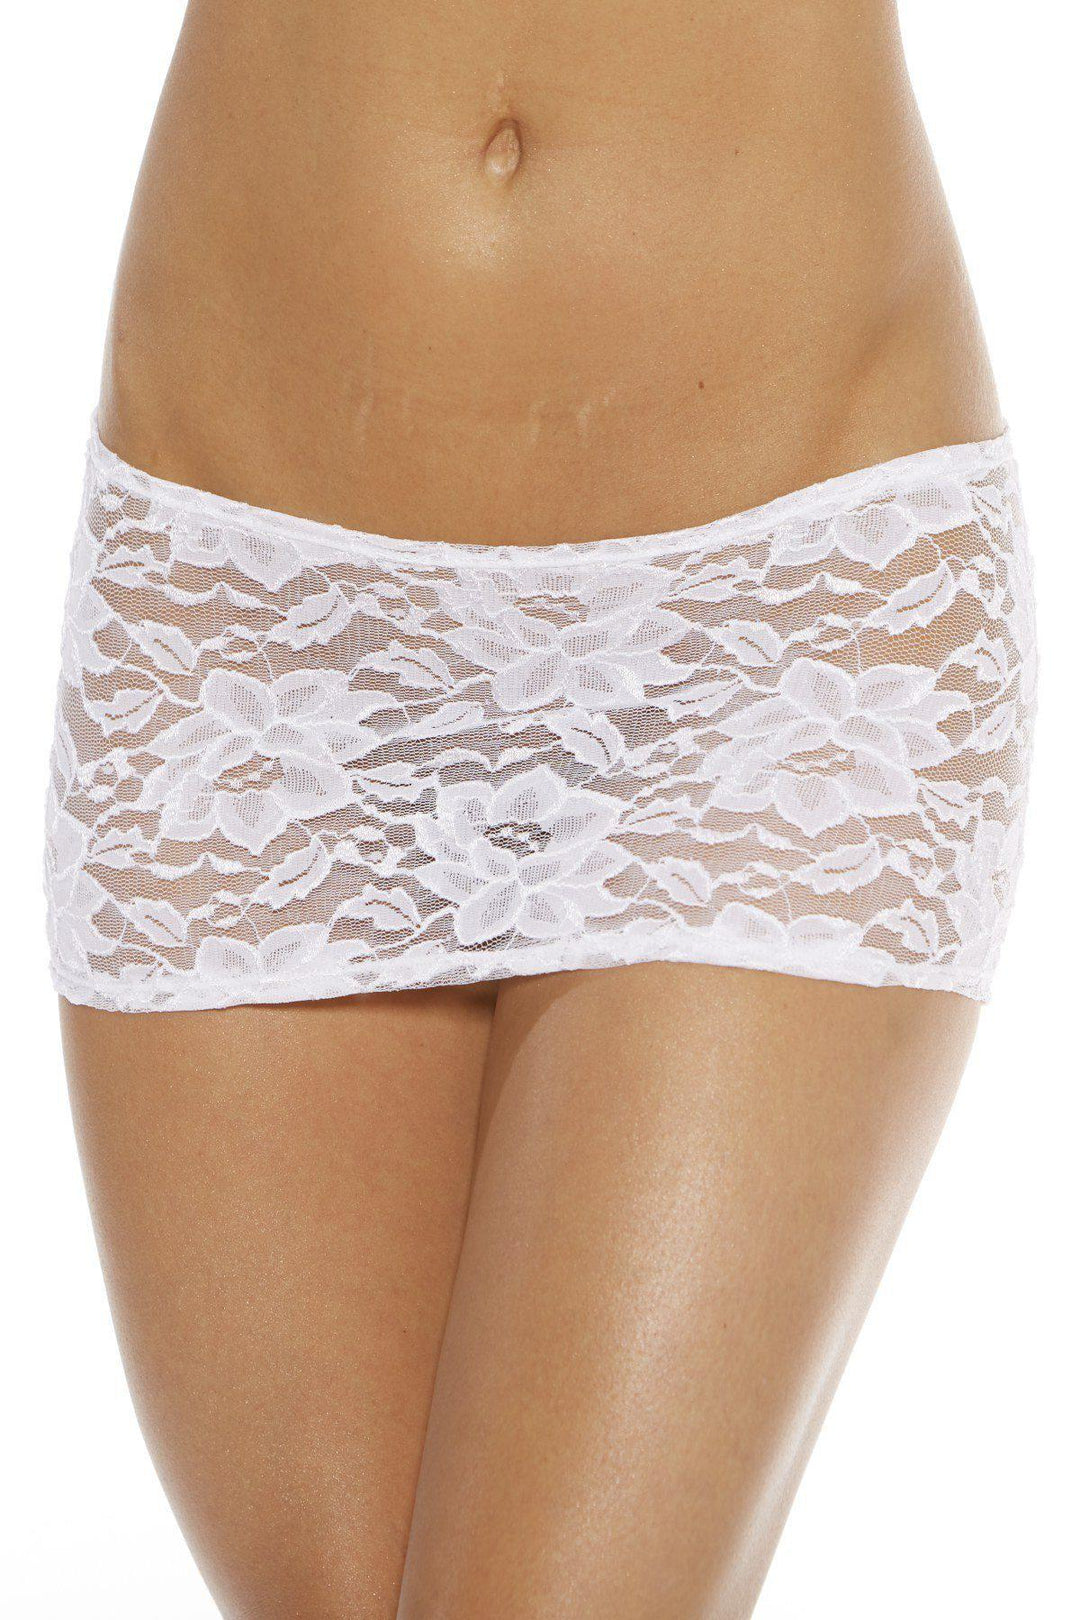 Lace Skirt-Ruffle + Pleated Skirts-Bodyshotz-White-O/S-SEXYSHOES.COM